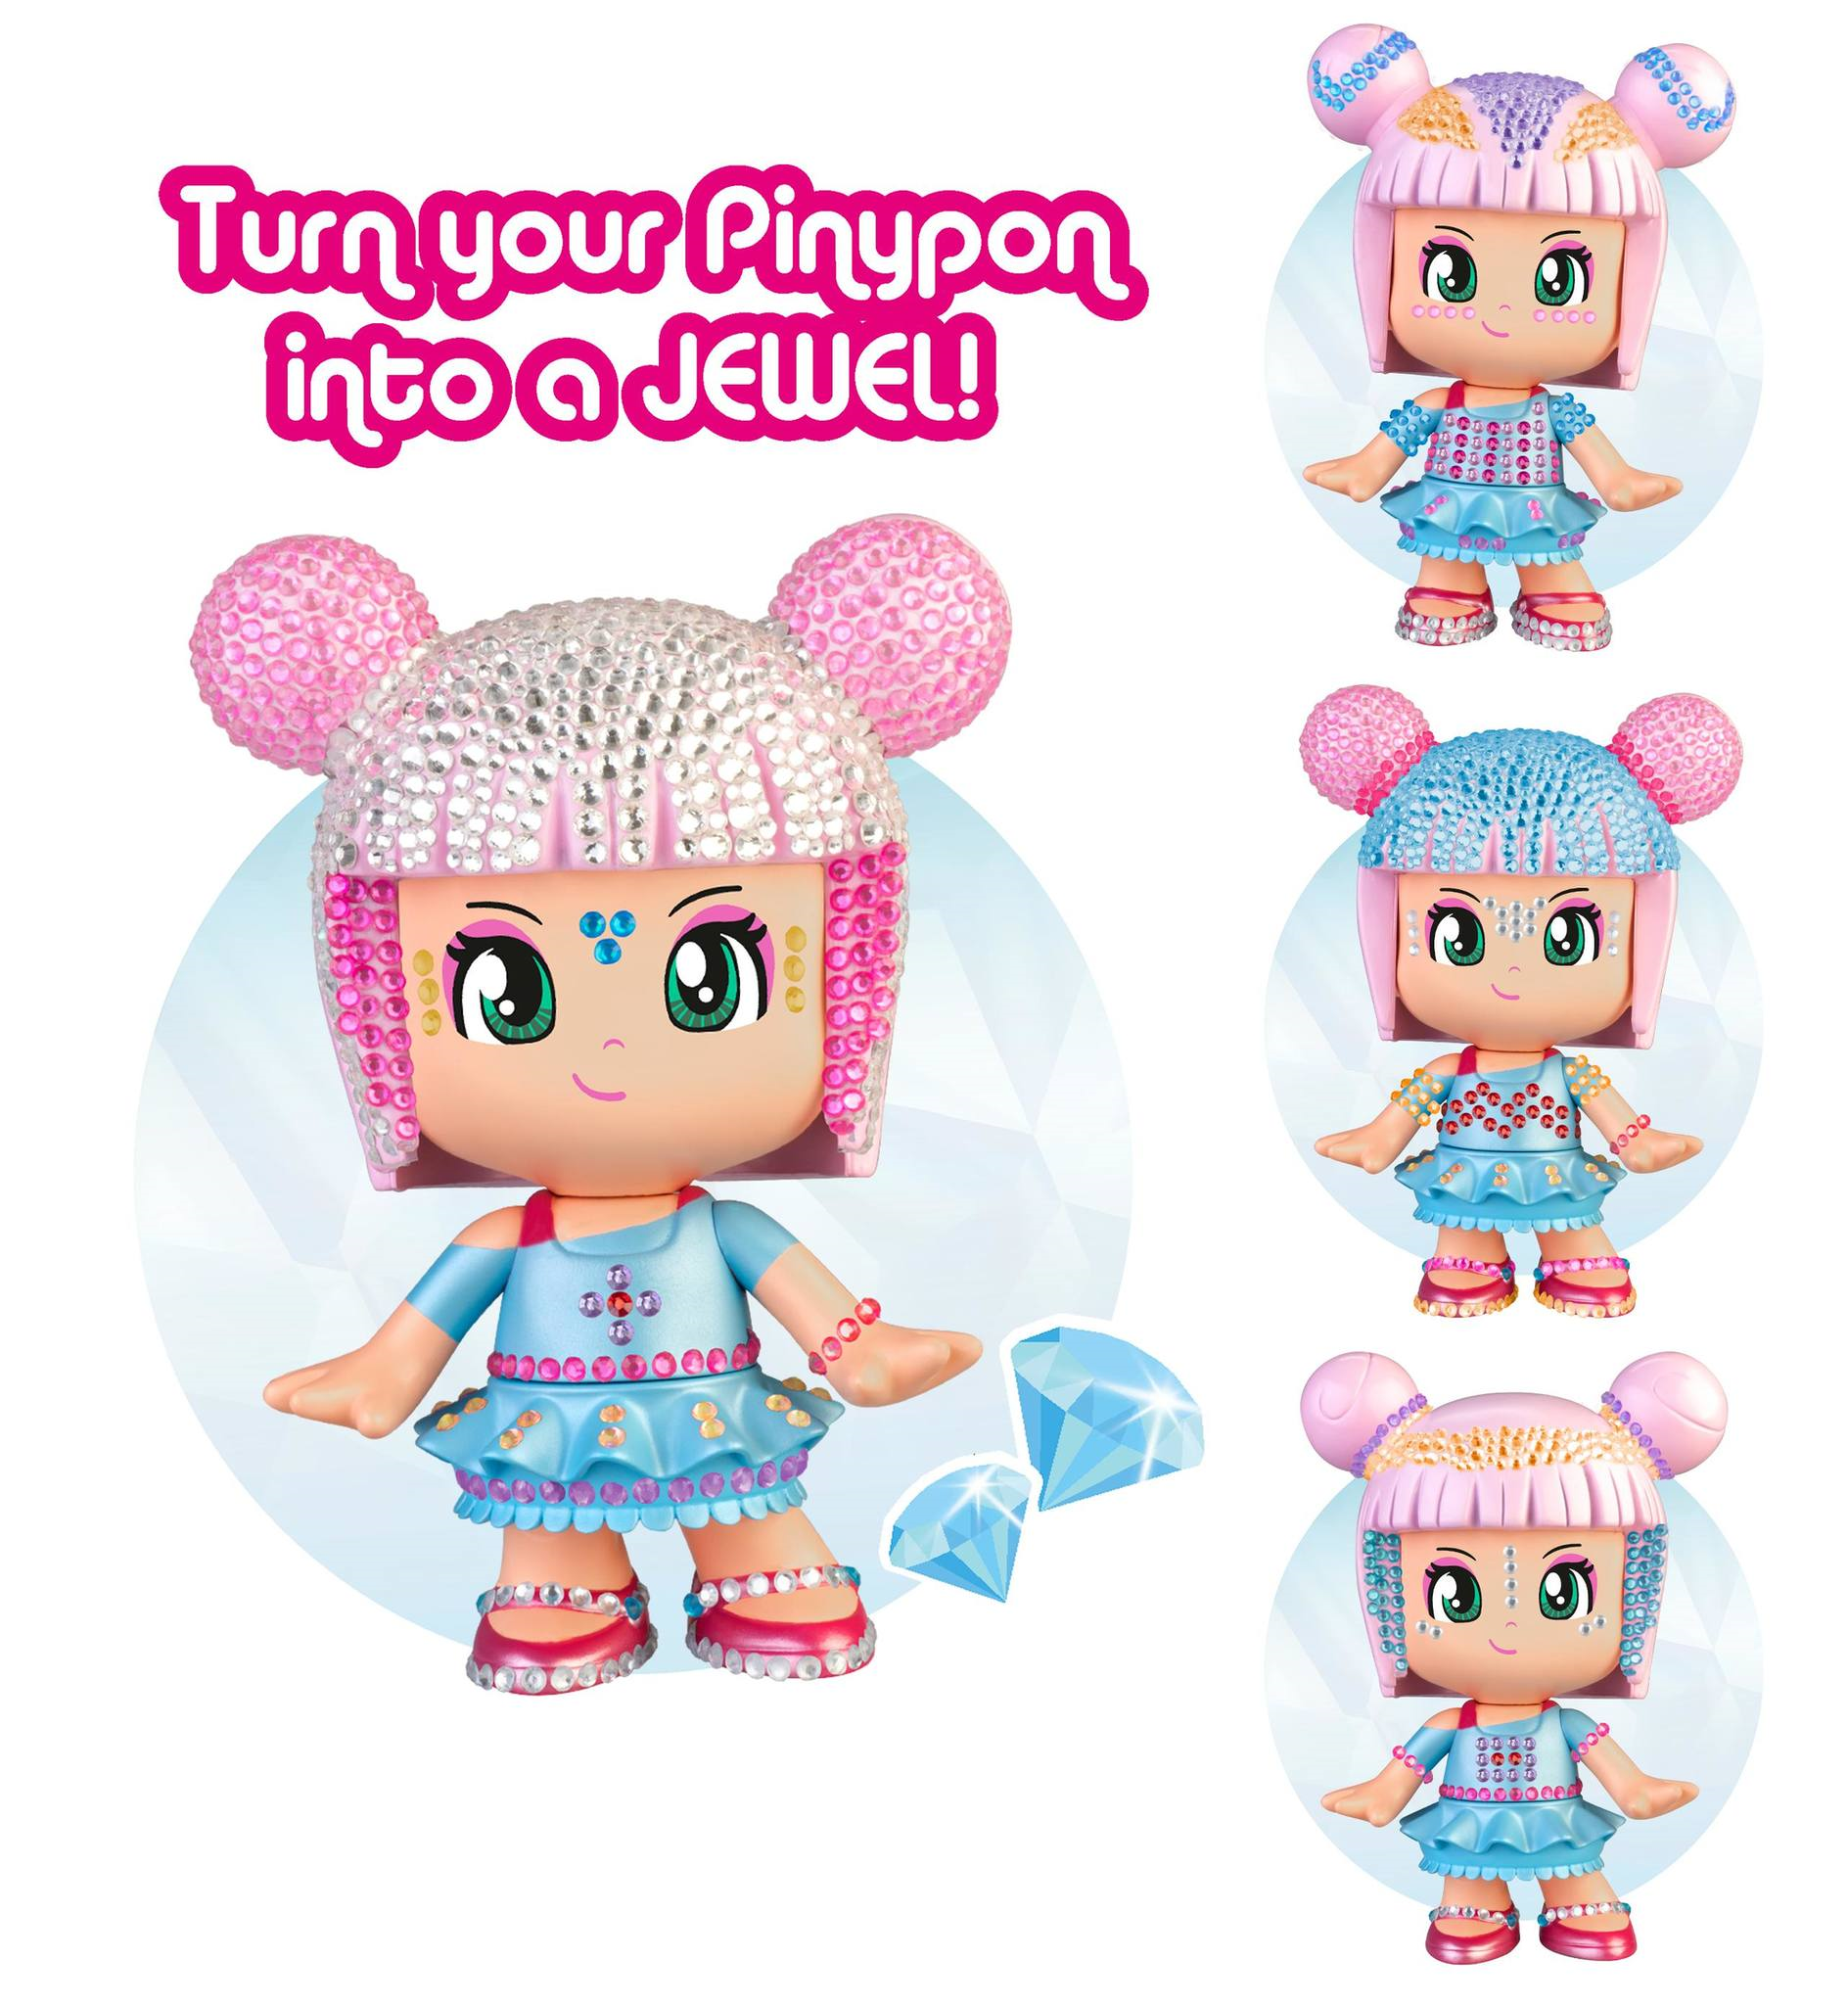 Pinypon pop & shine, personaggio pinypon da 17 cm, con oltre 500 cristalli colorati, per bambine/i da 4 anni - PINYPON